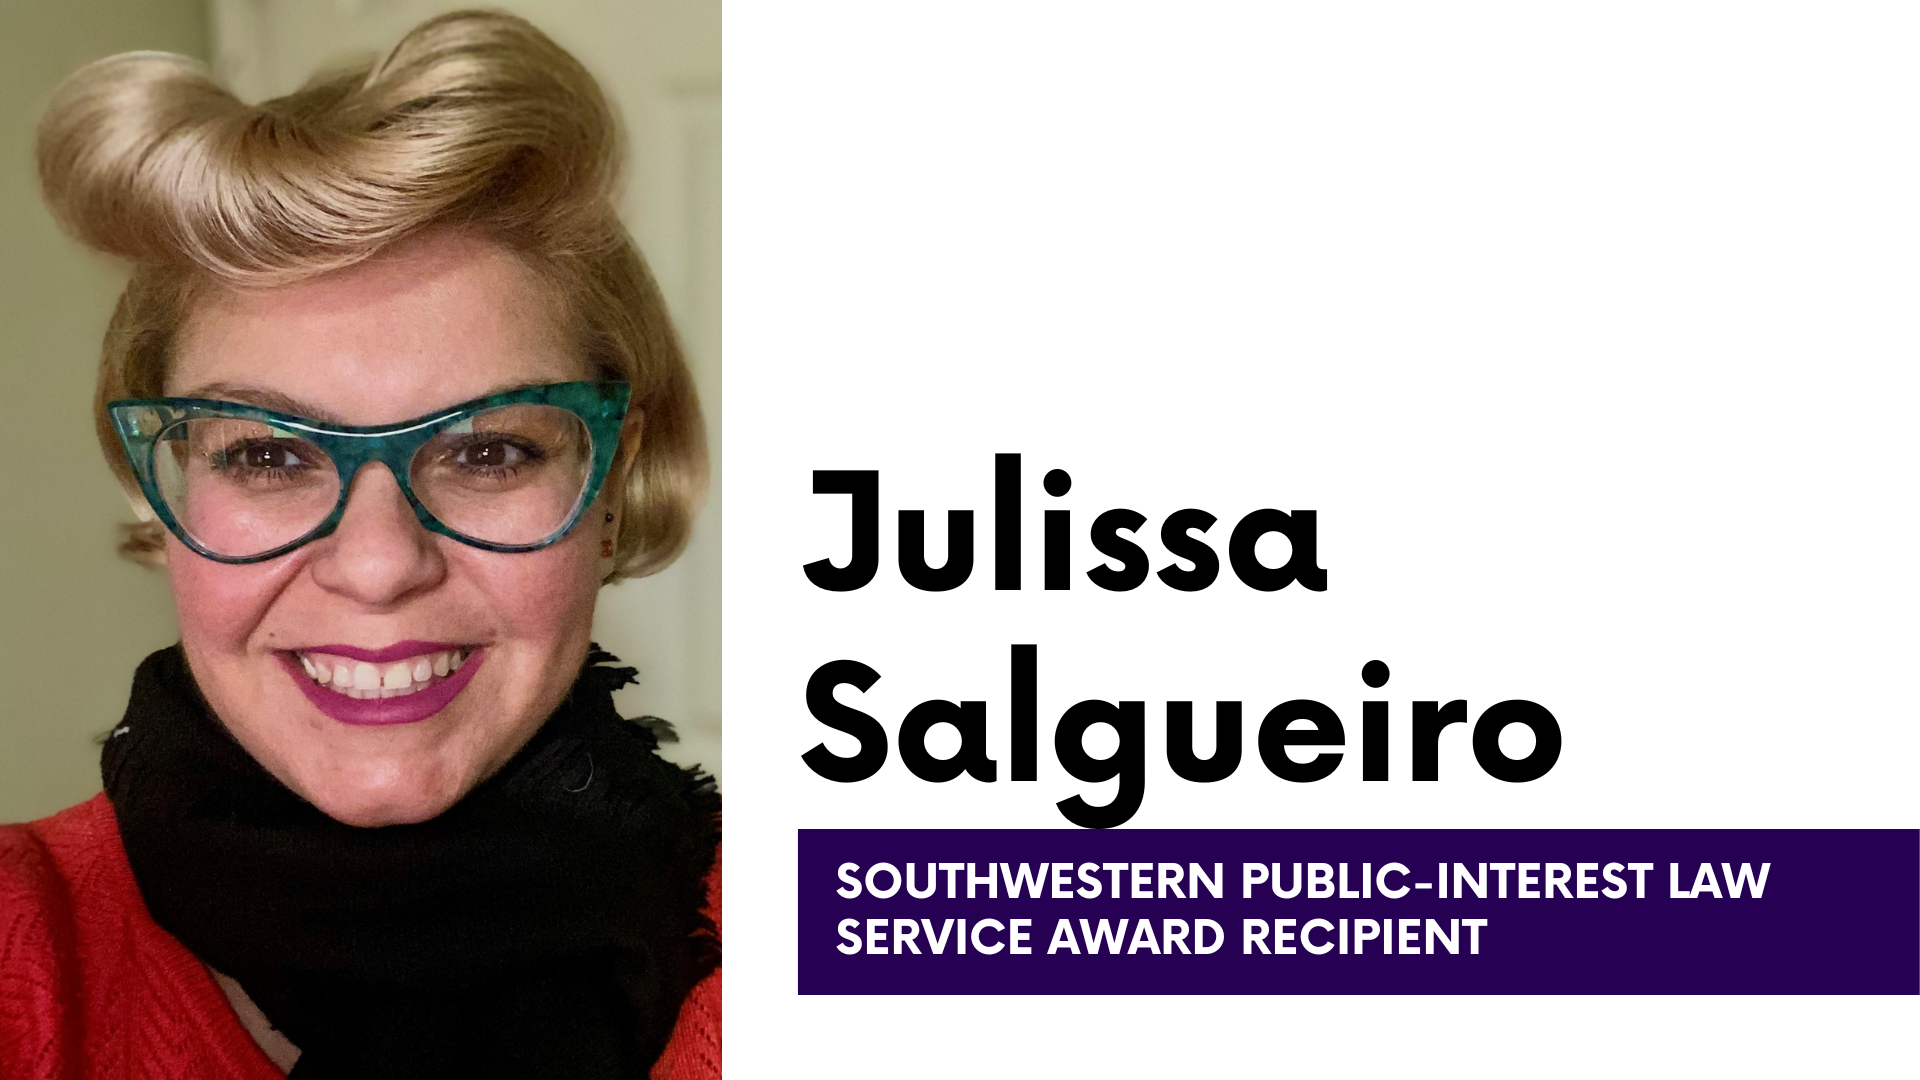  Julissa Salgueiro headshot with text: Julissa Salgueiro Southwestern Public-Interest Law Service Award Recipient